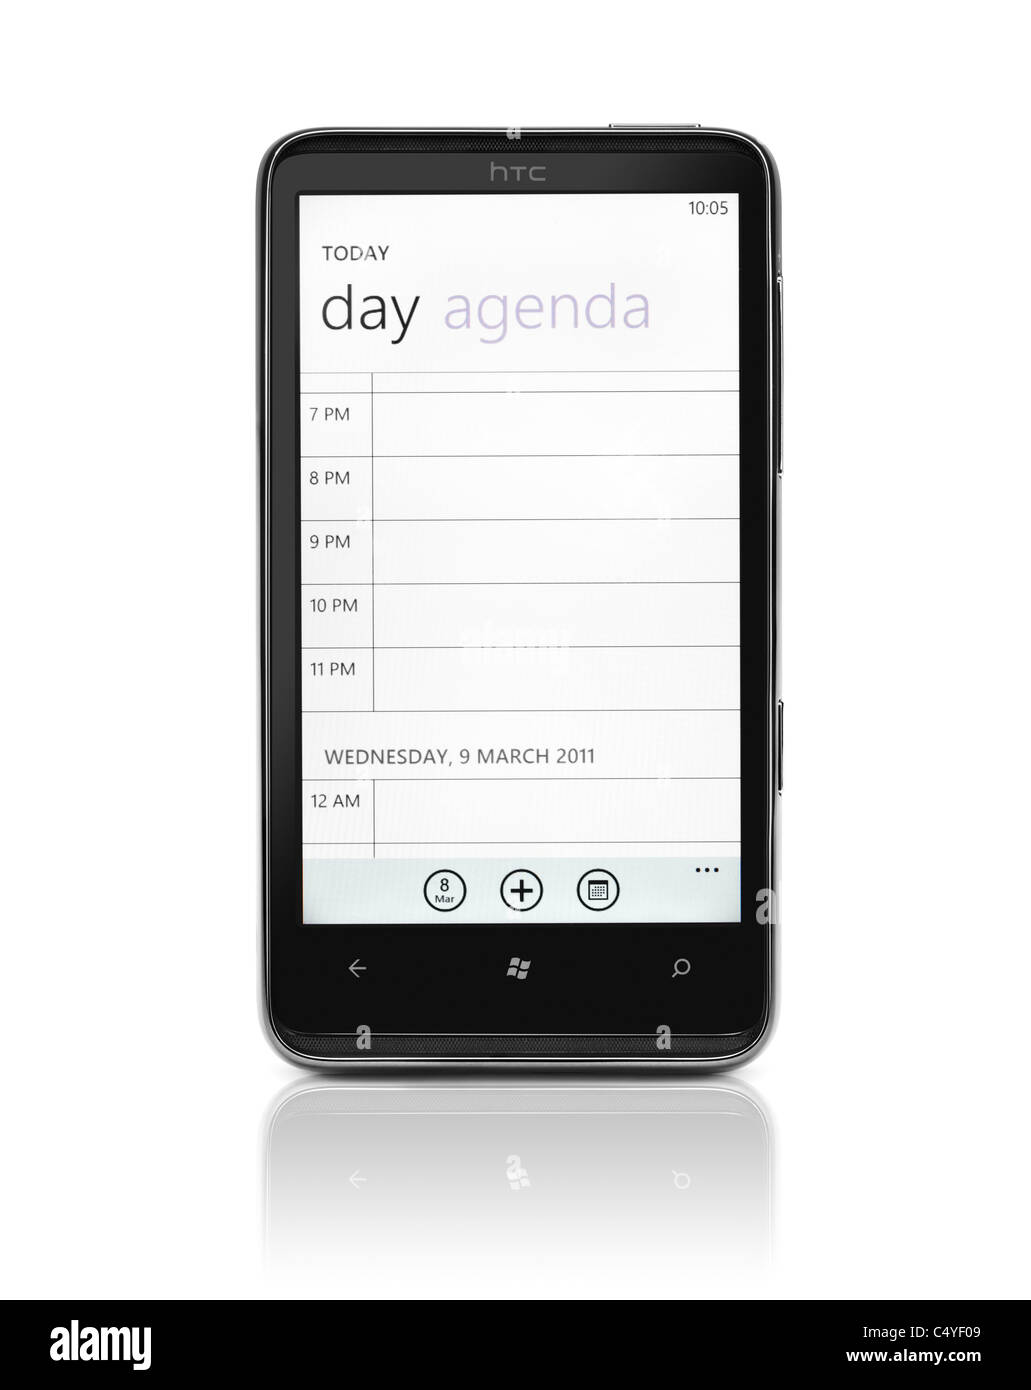 Windows phone 7. HTC HD7 smartphone con giorno agenda agenda elettronica sul suo visualizzatore isolati su sfondo bianco. Foto di qualità elevata. Foto Stock